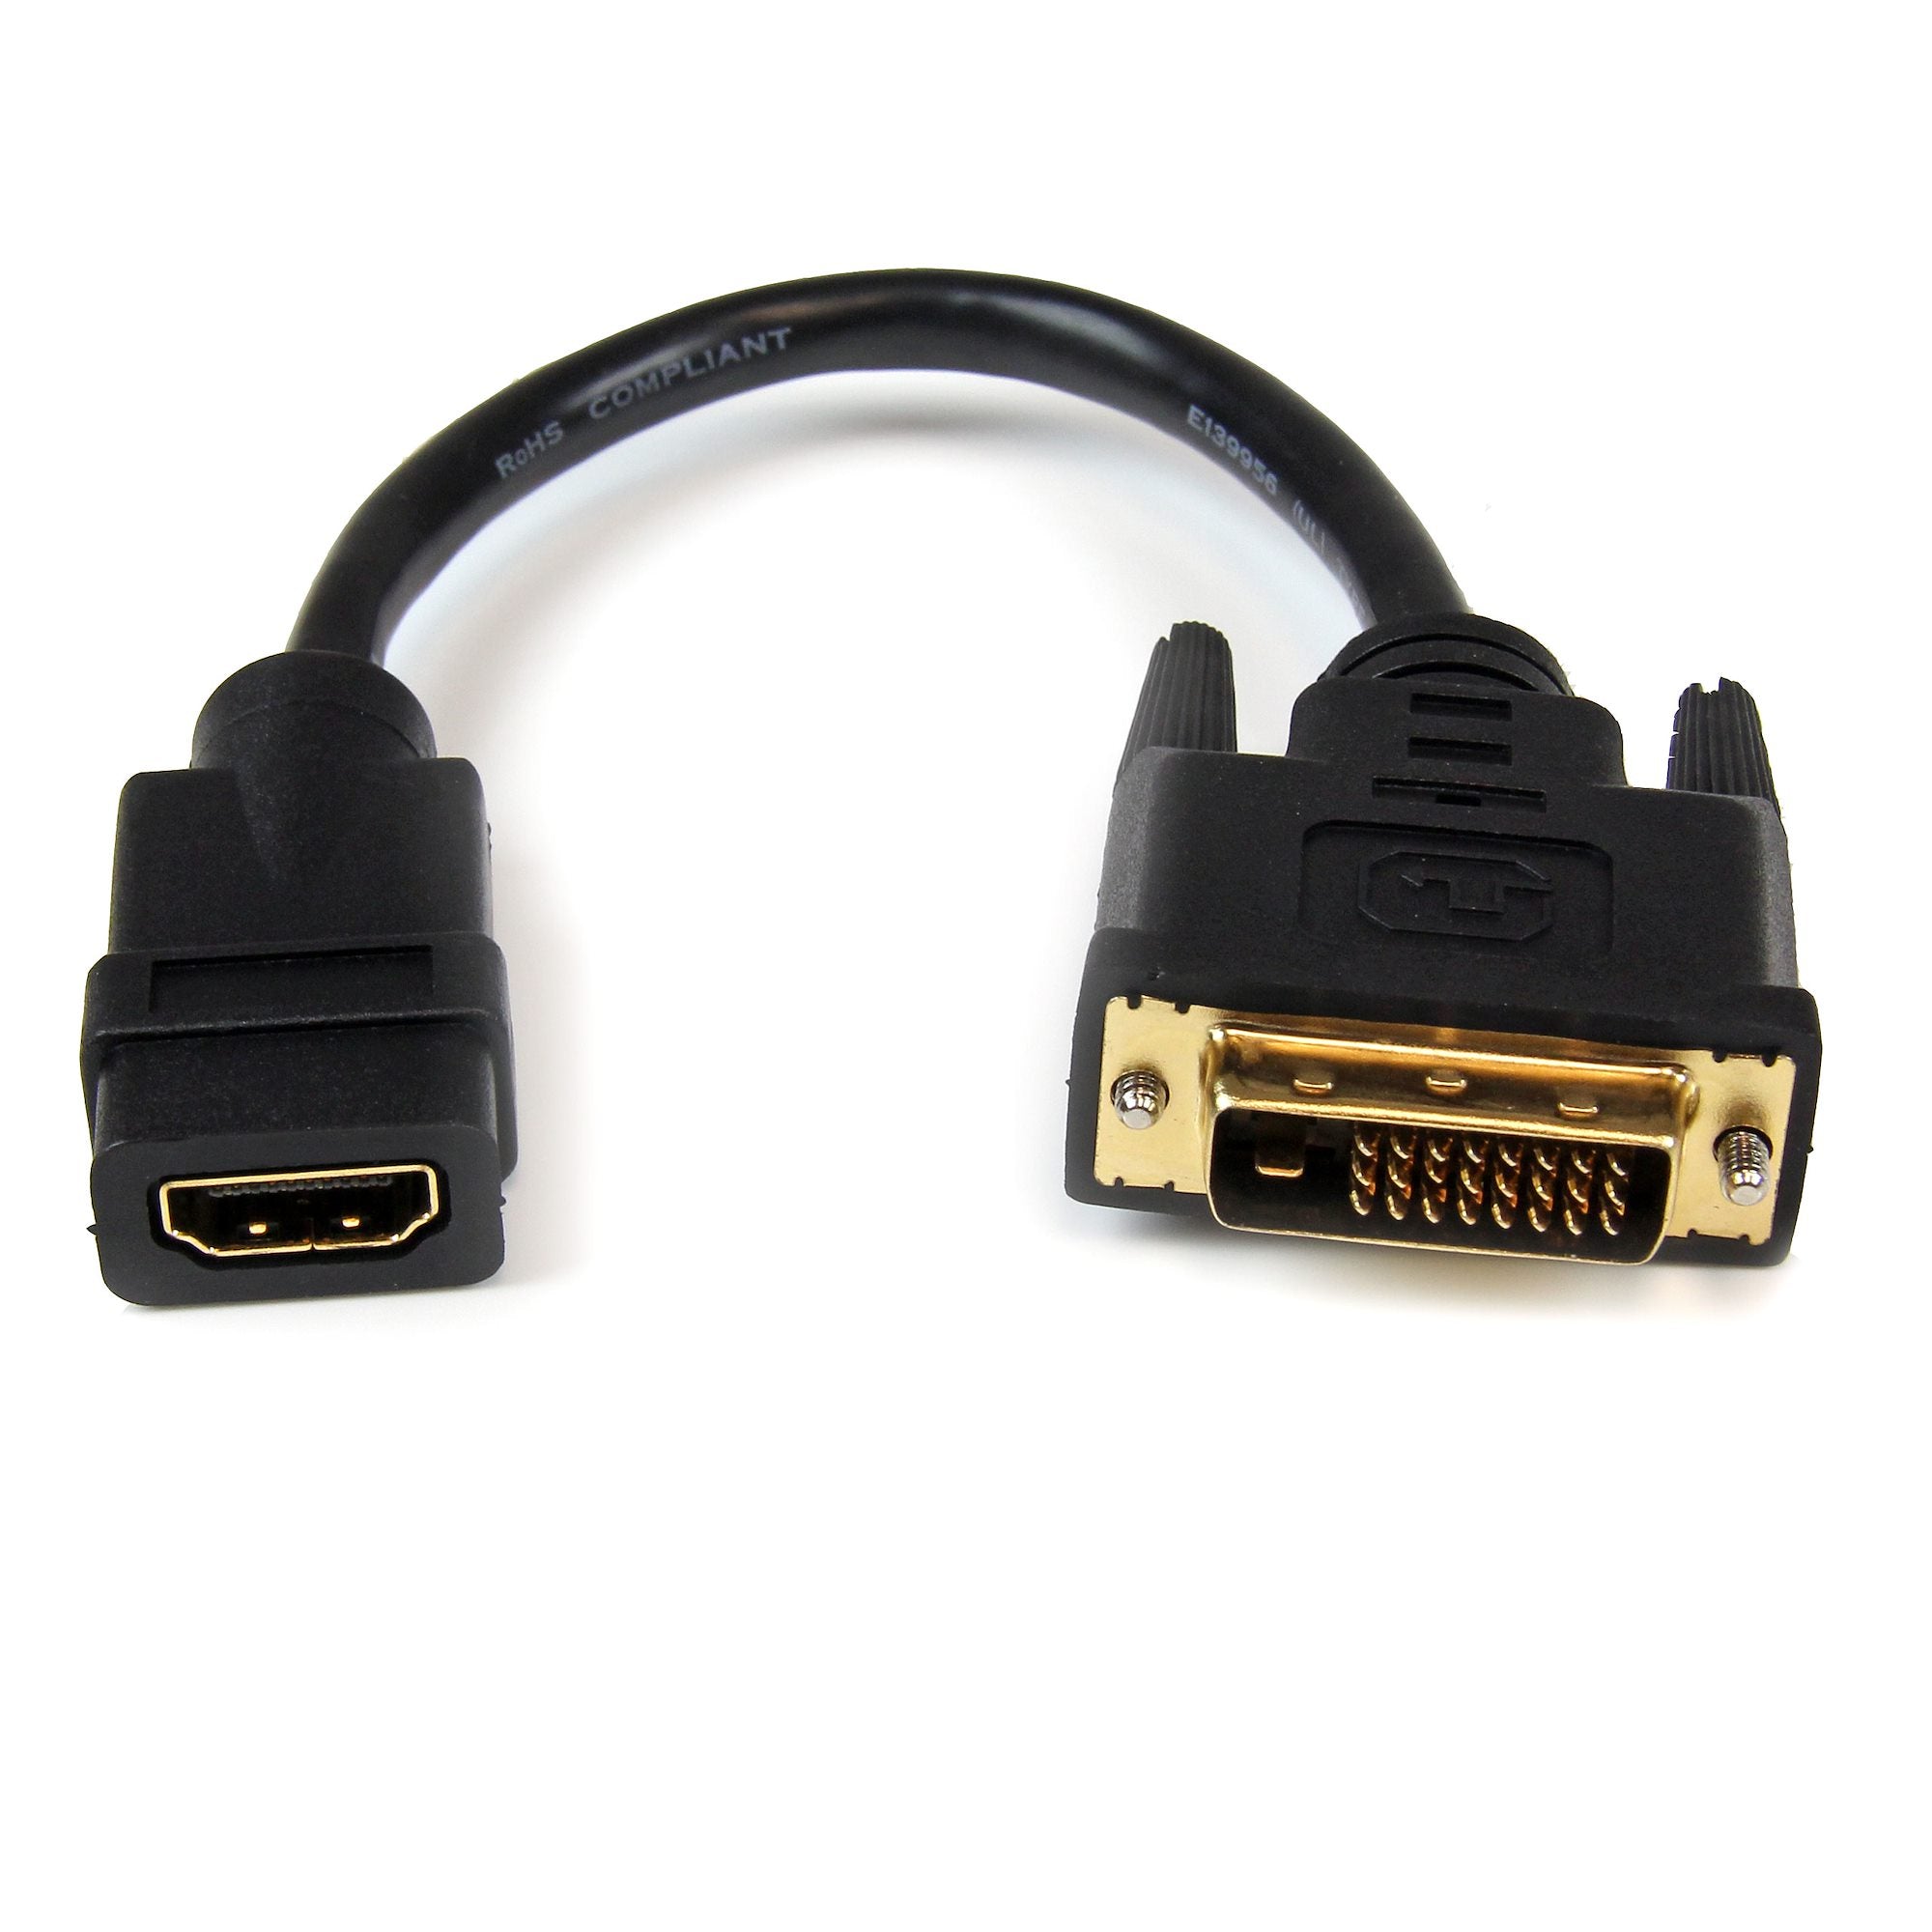 Adaptateur Lightning vers HDMI, Adaptateurs